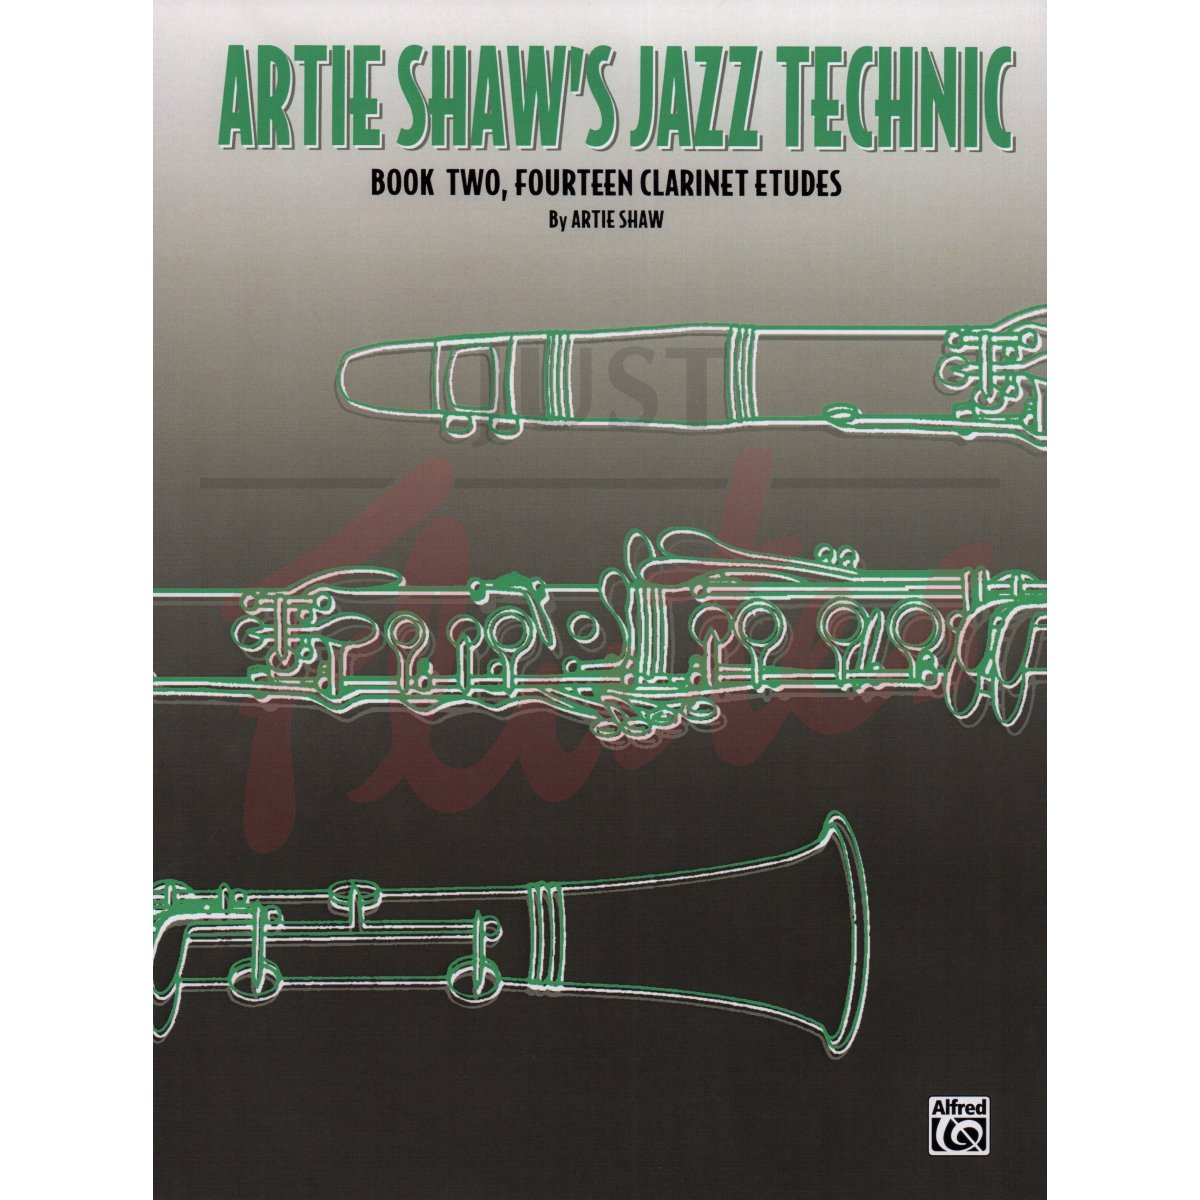 Artie Shaw's Jazz Technic Book 2: Fourteen Clarinet Etudes